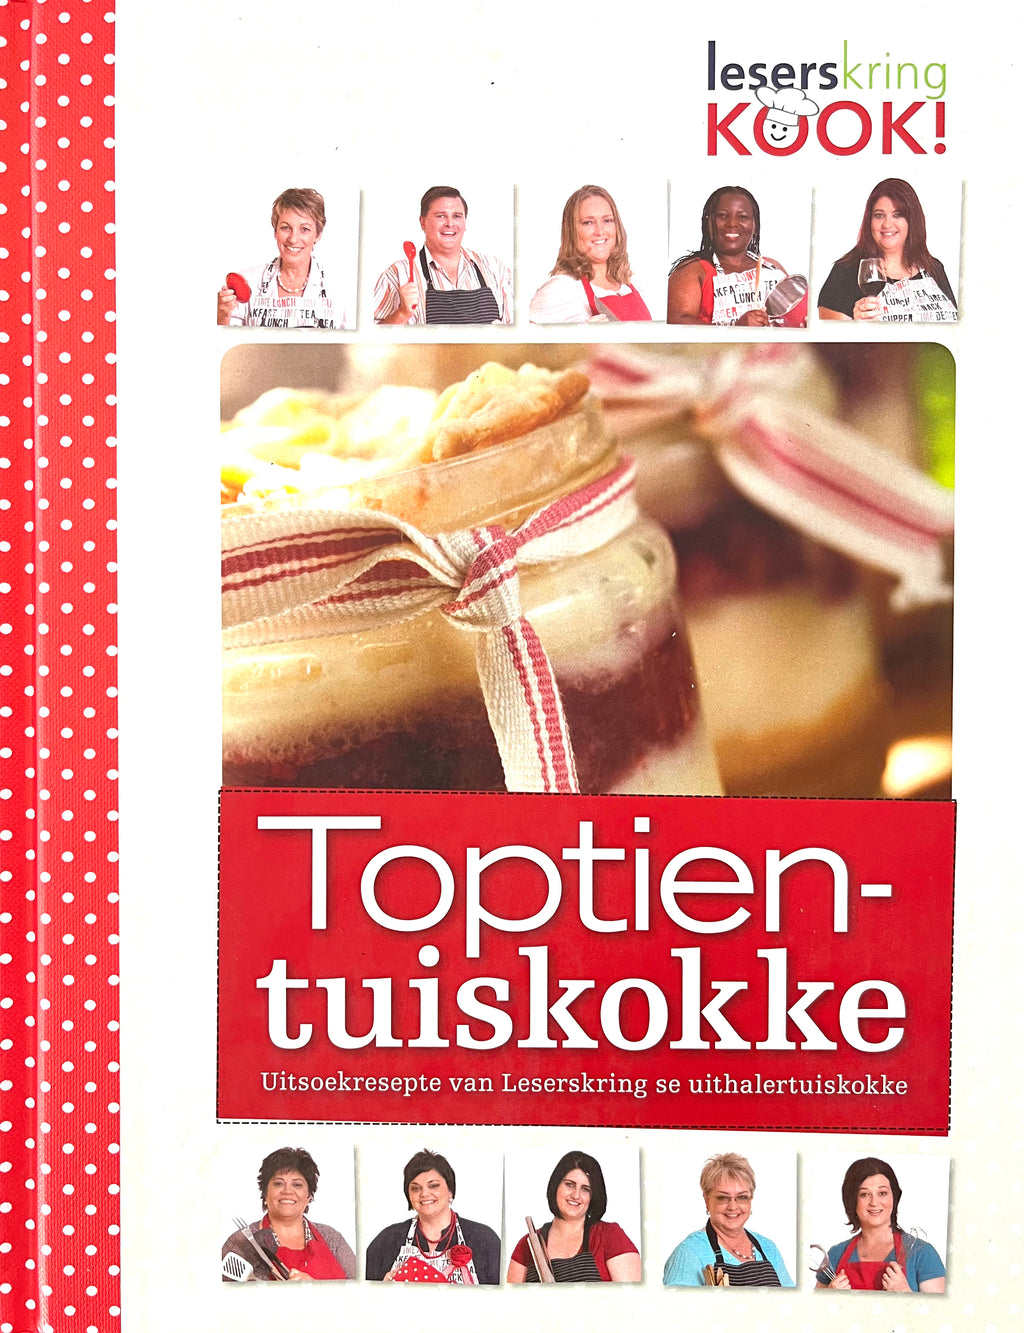 Toptien-Tuiskokke (Uitsoekresepte Van Leserskring Se Uithalerkokke)